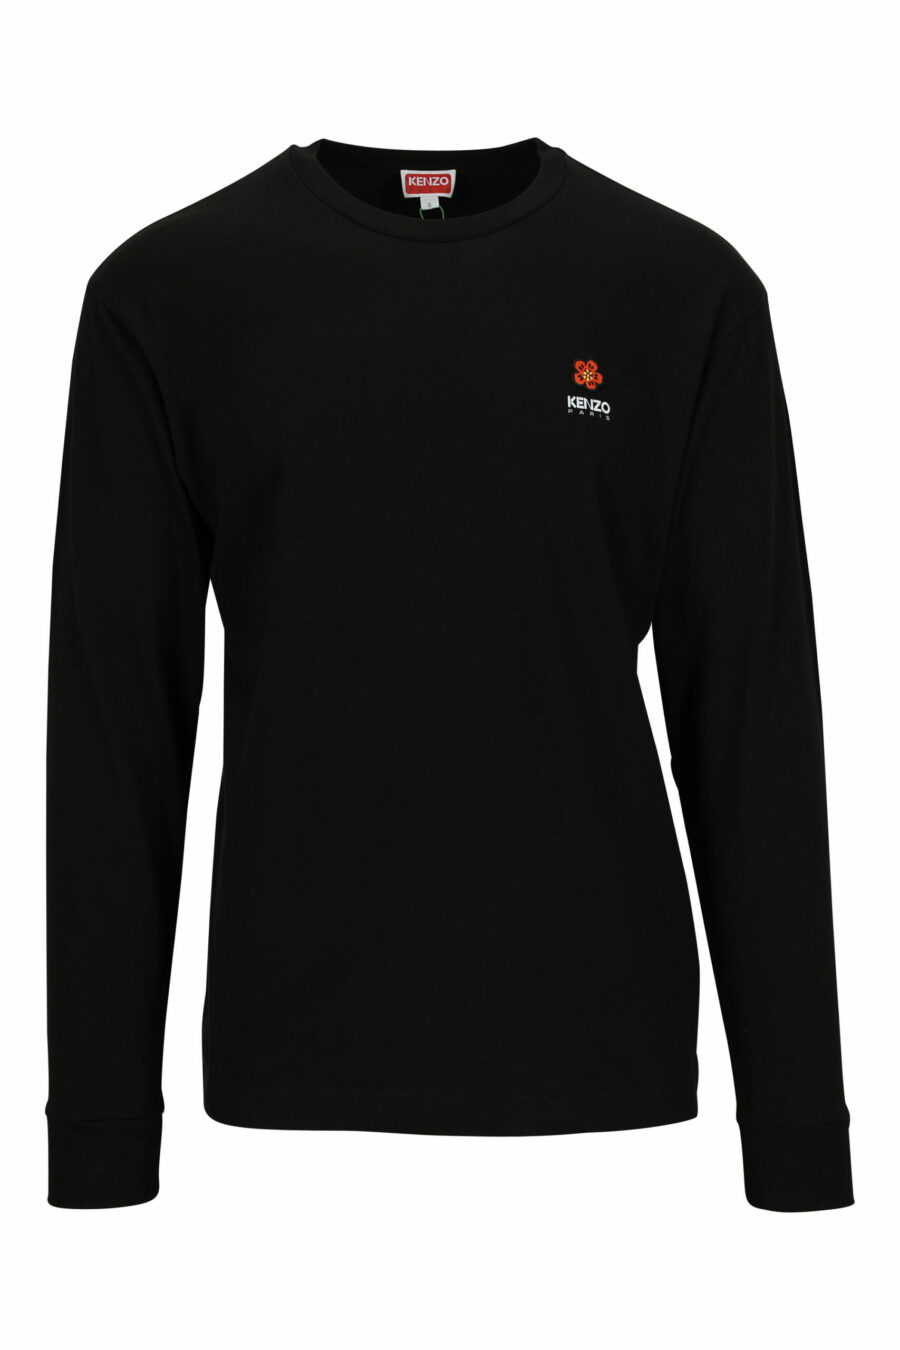 Schwarzes langärmeliges T-Shirt mit Blumen-Mini-Logo - 3612230547872 skaliert